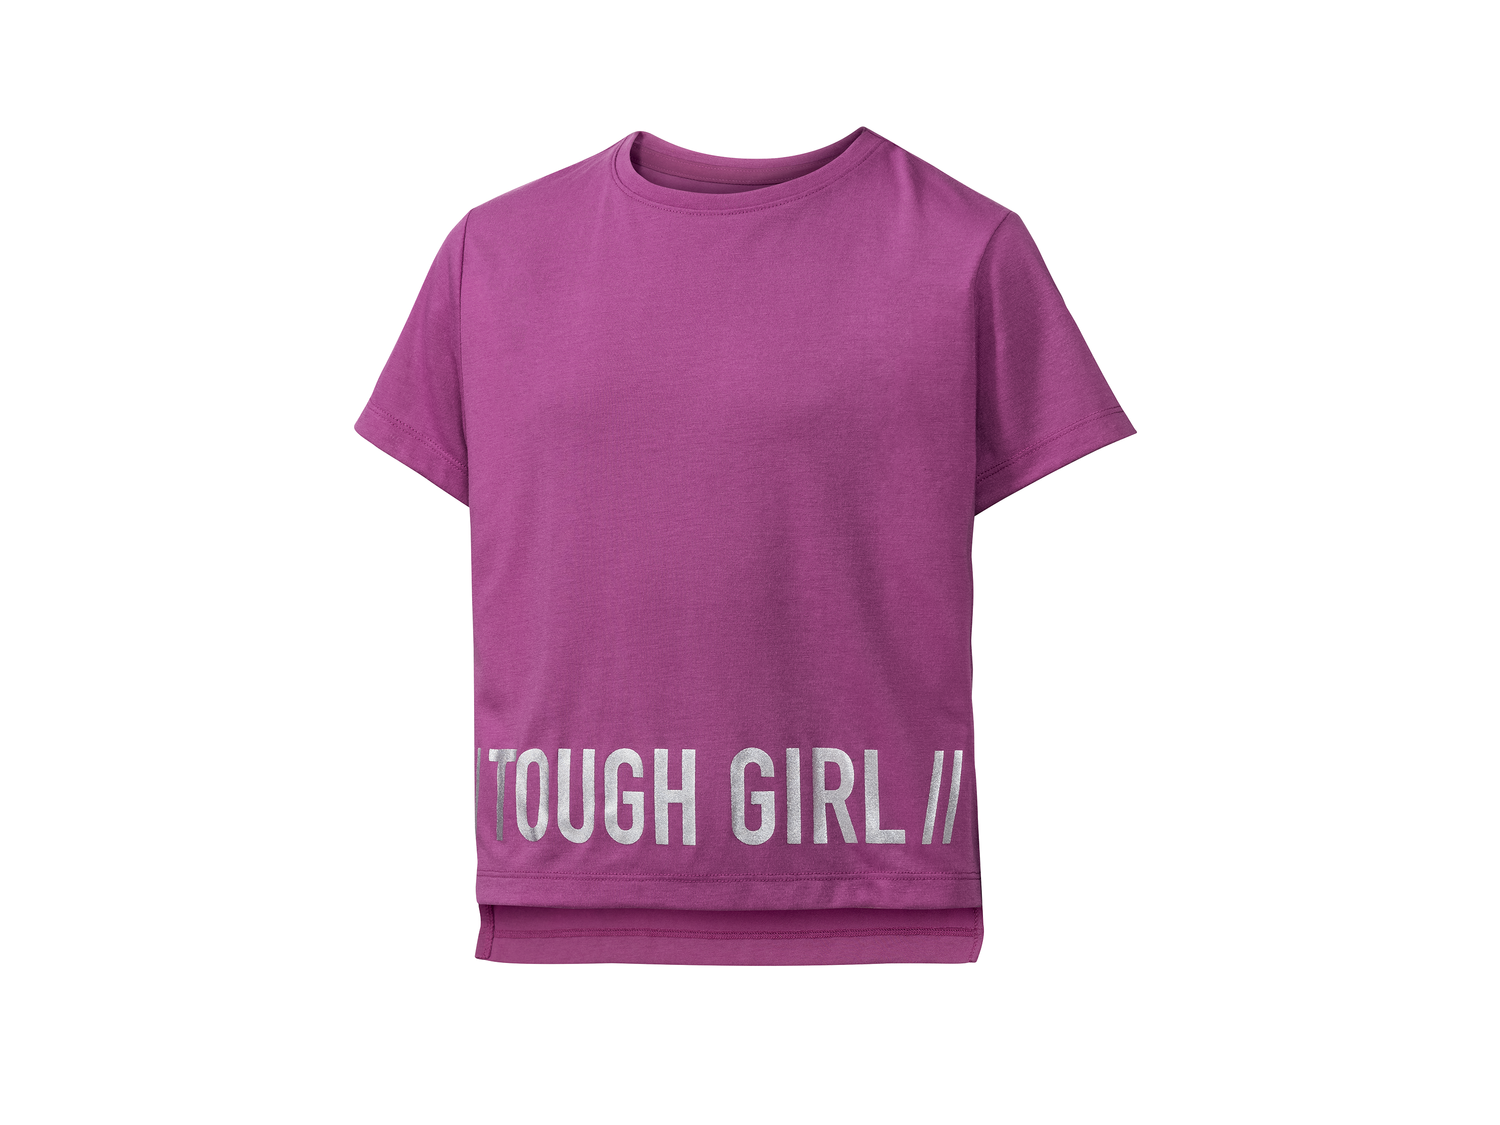 T-shirt technique garçon , le prix 3.99 € 
- Ex. 100 % polyester
- 3 coloris ...